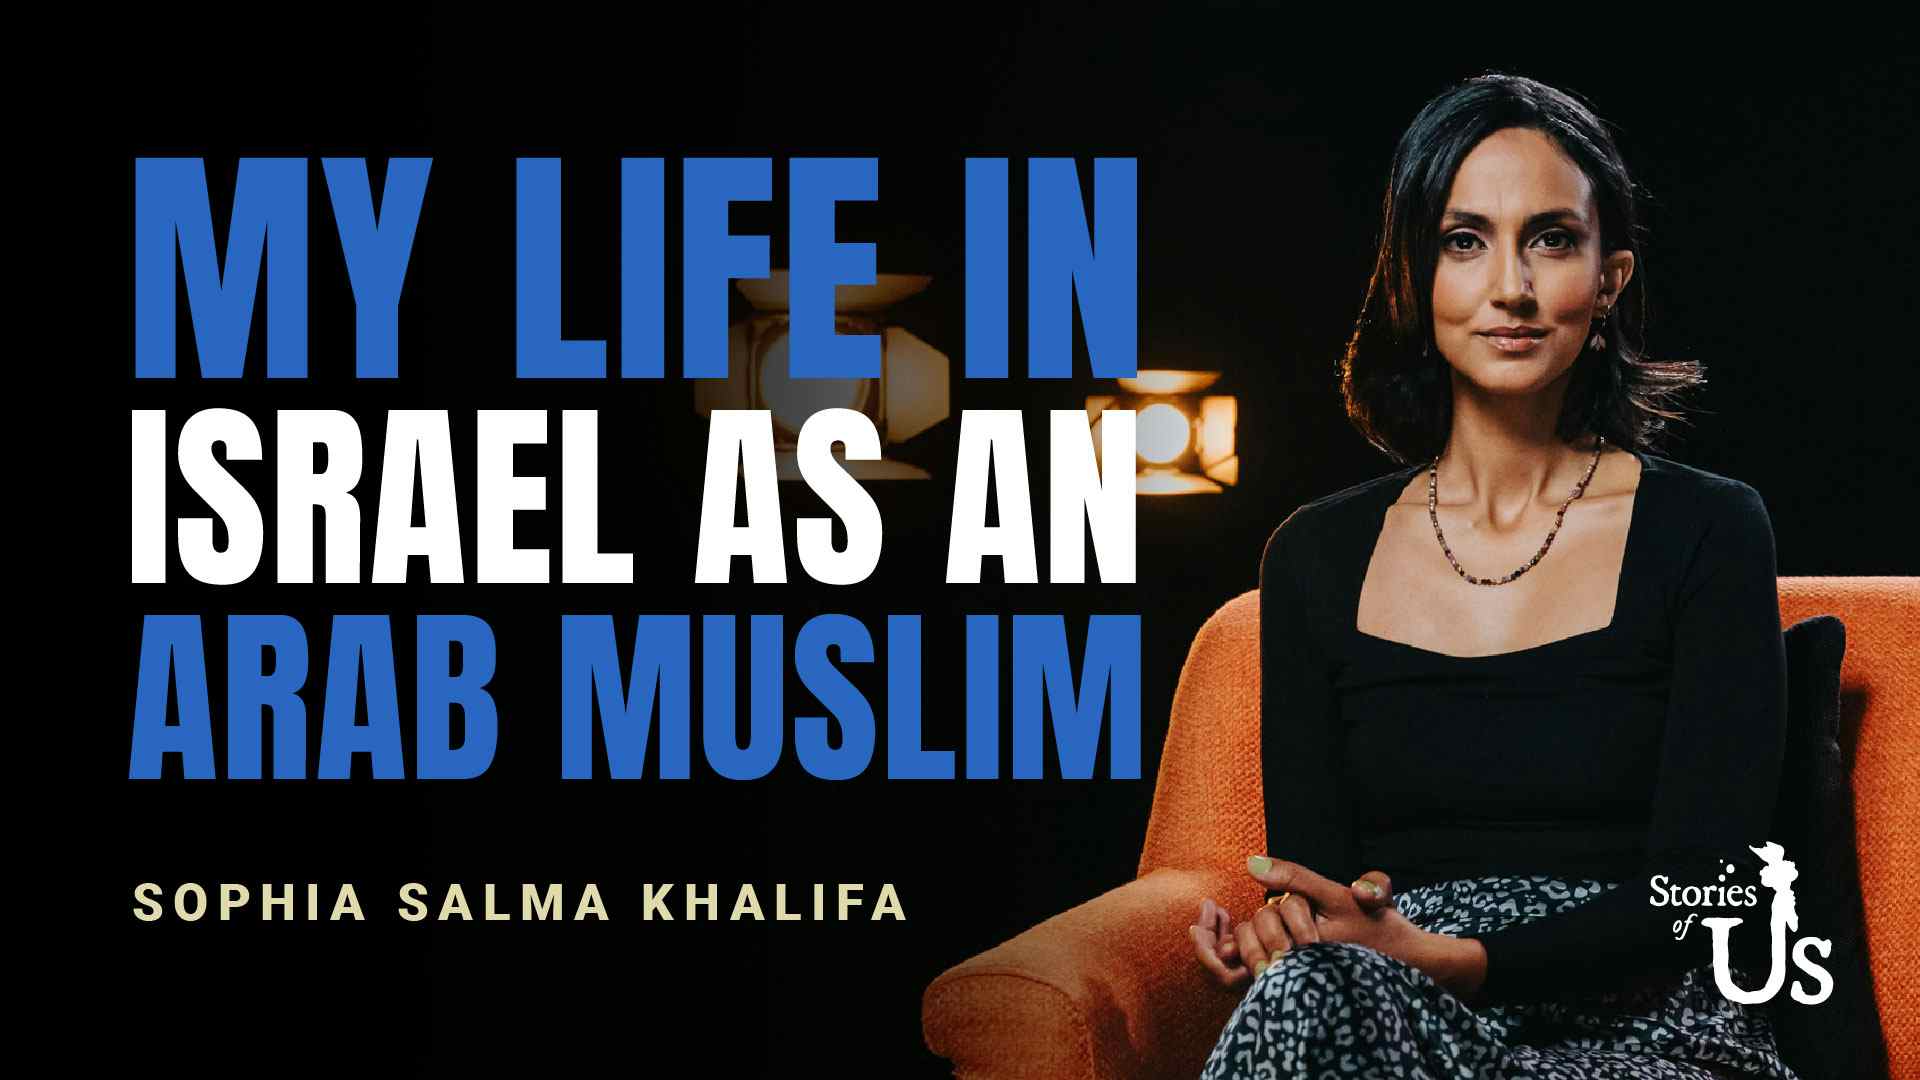 Sophia Salma Khalifa: My Life in Israel as an Arab Muslim